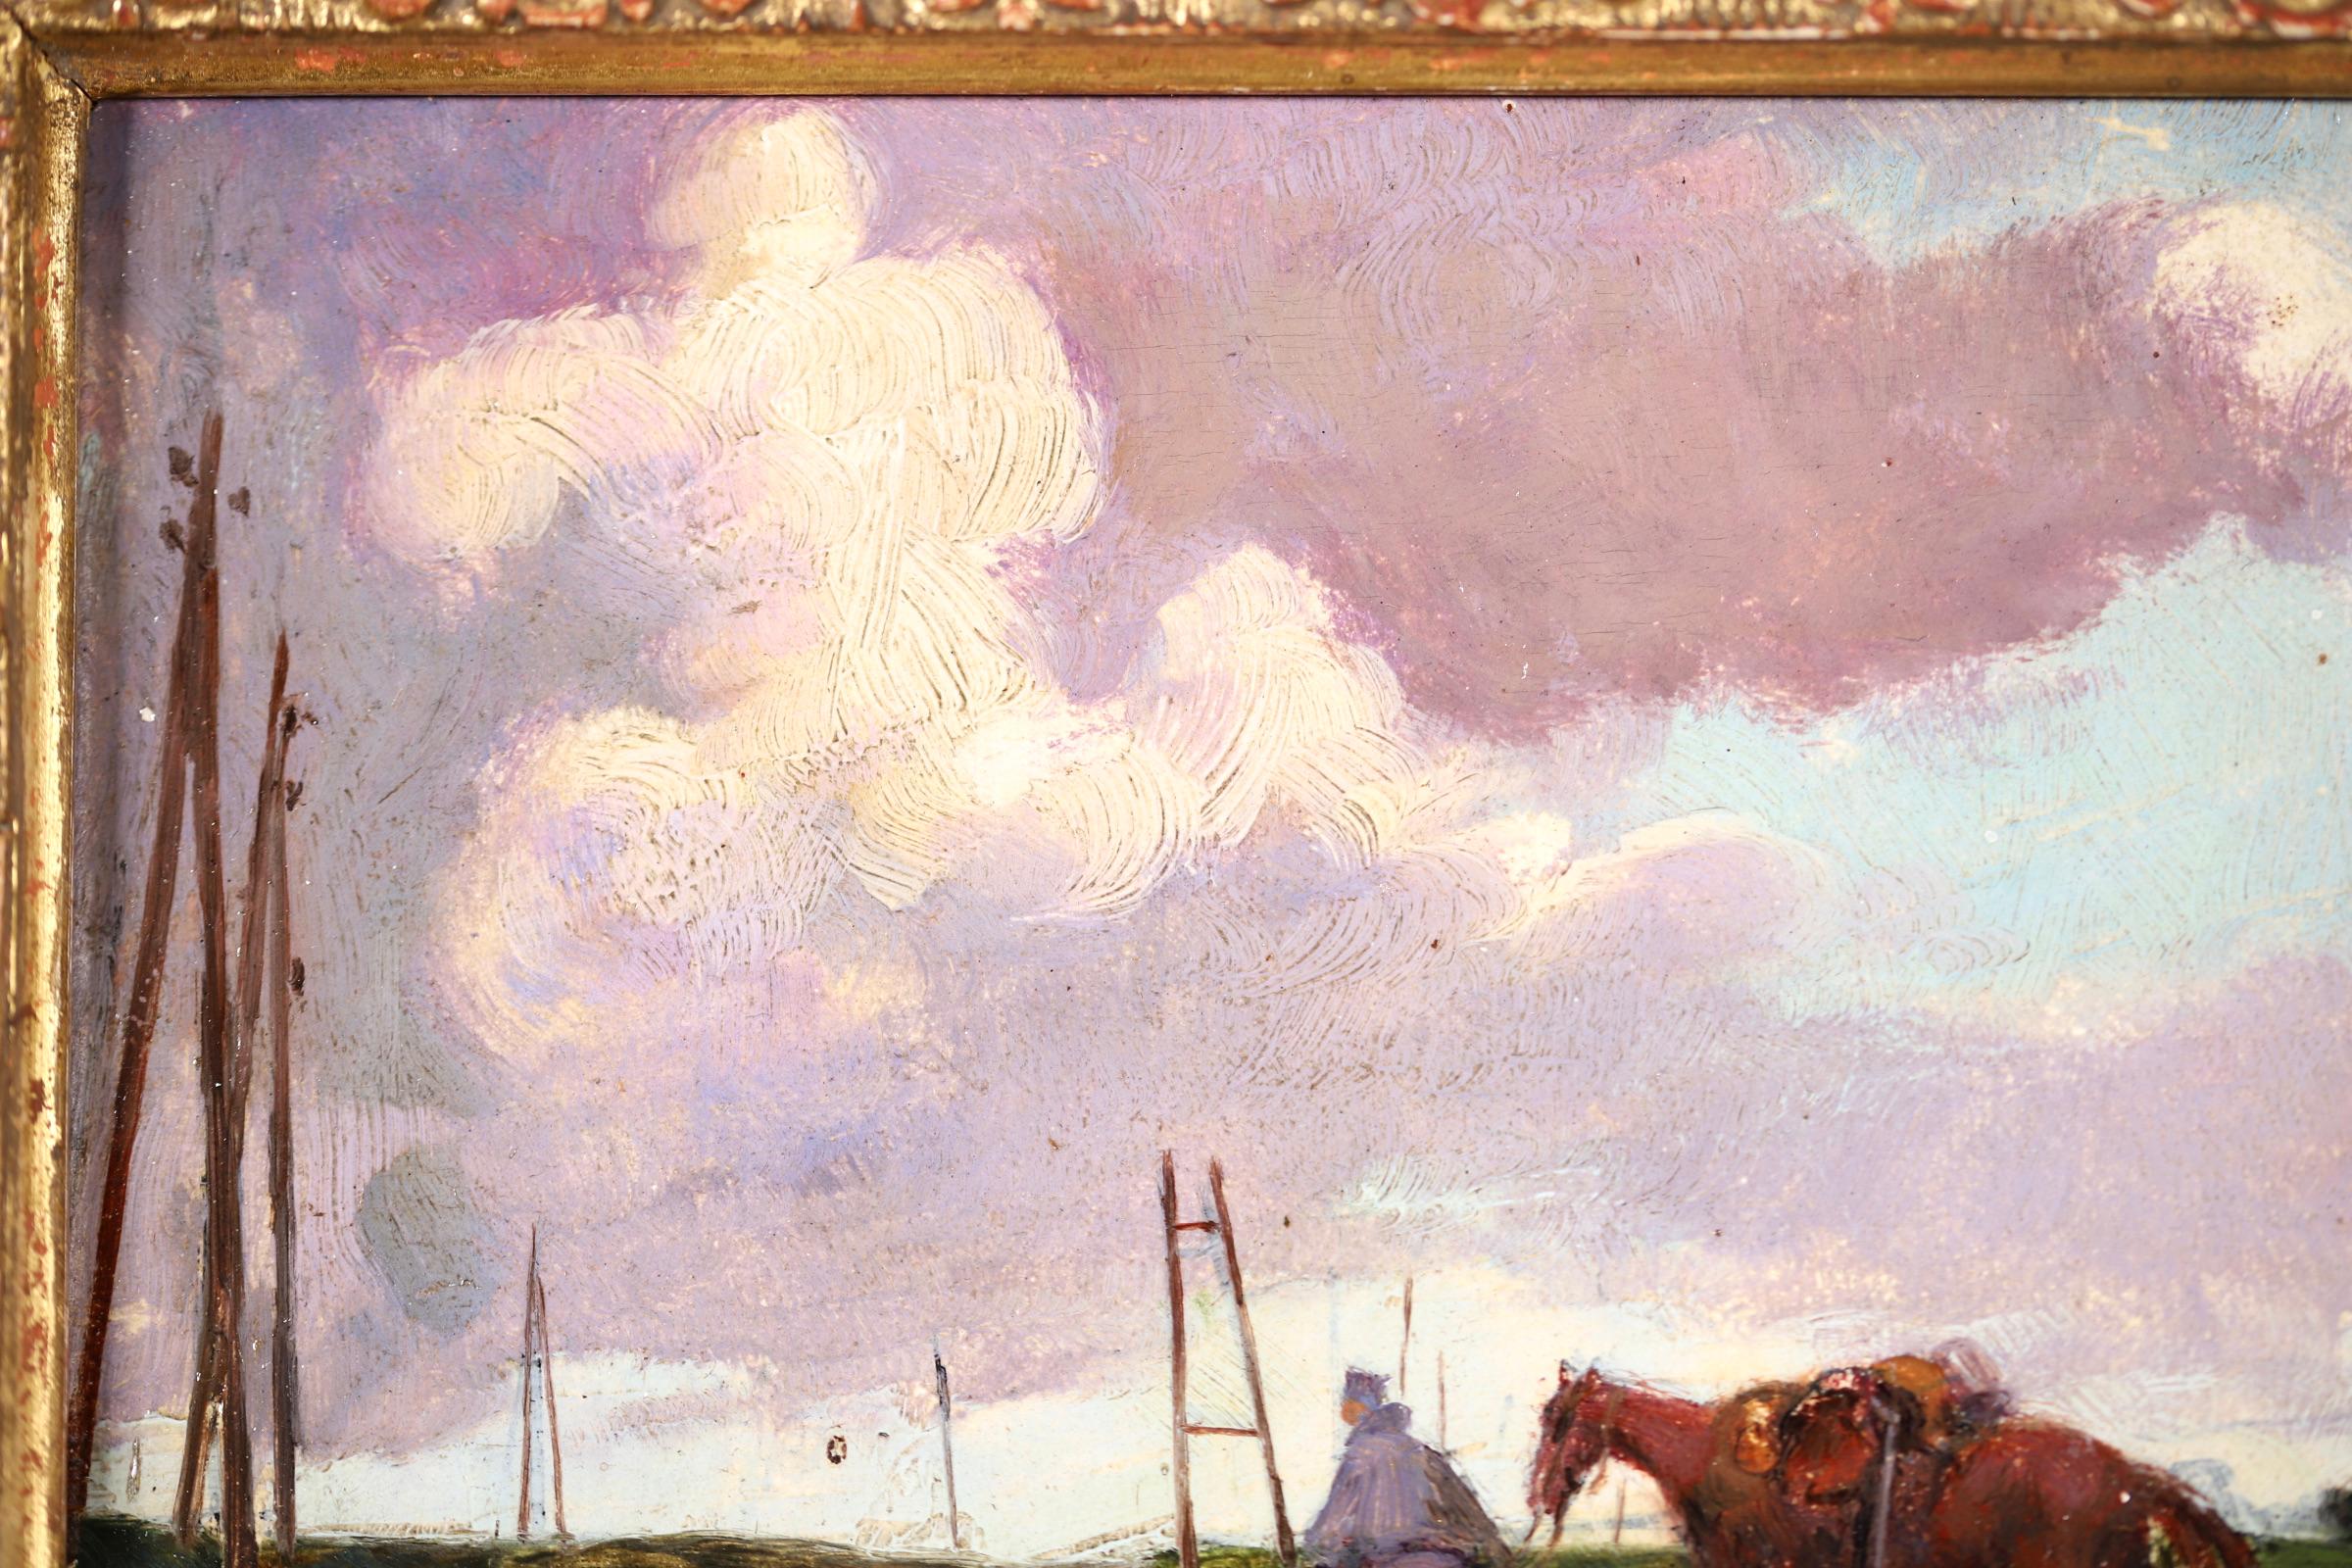 Magnifique huile sur panneau vers 1920 du peintre impressionniste français Andre Devambez. L'œuvre représente un soldat conduisant son cheval le long d'un chemin de terre pendant la Grande Guerre. Une pièce simple mais poignante et magnifiquement